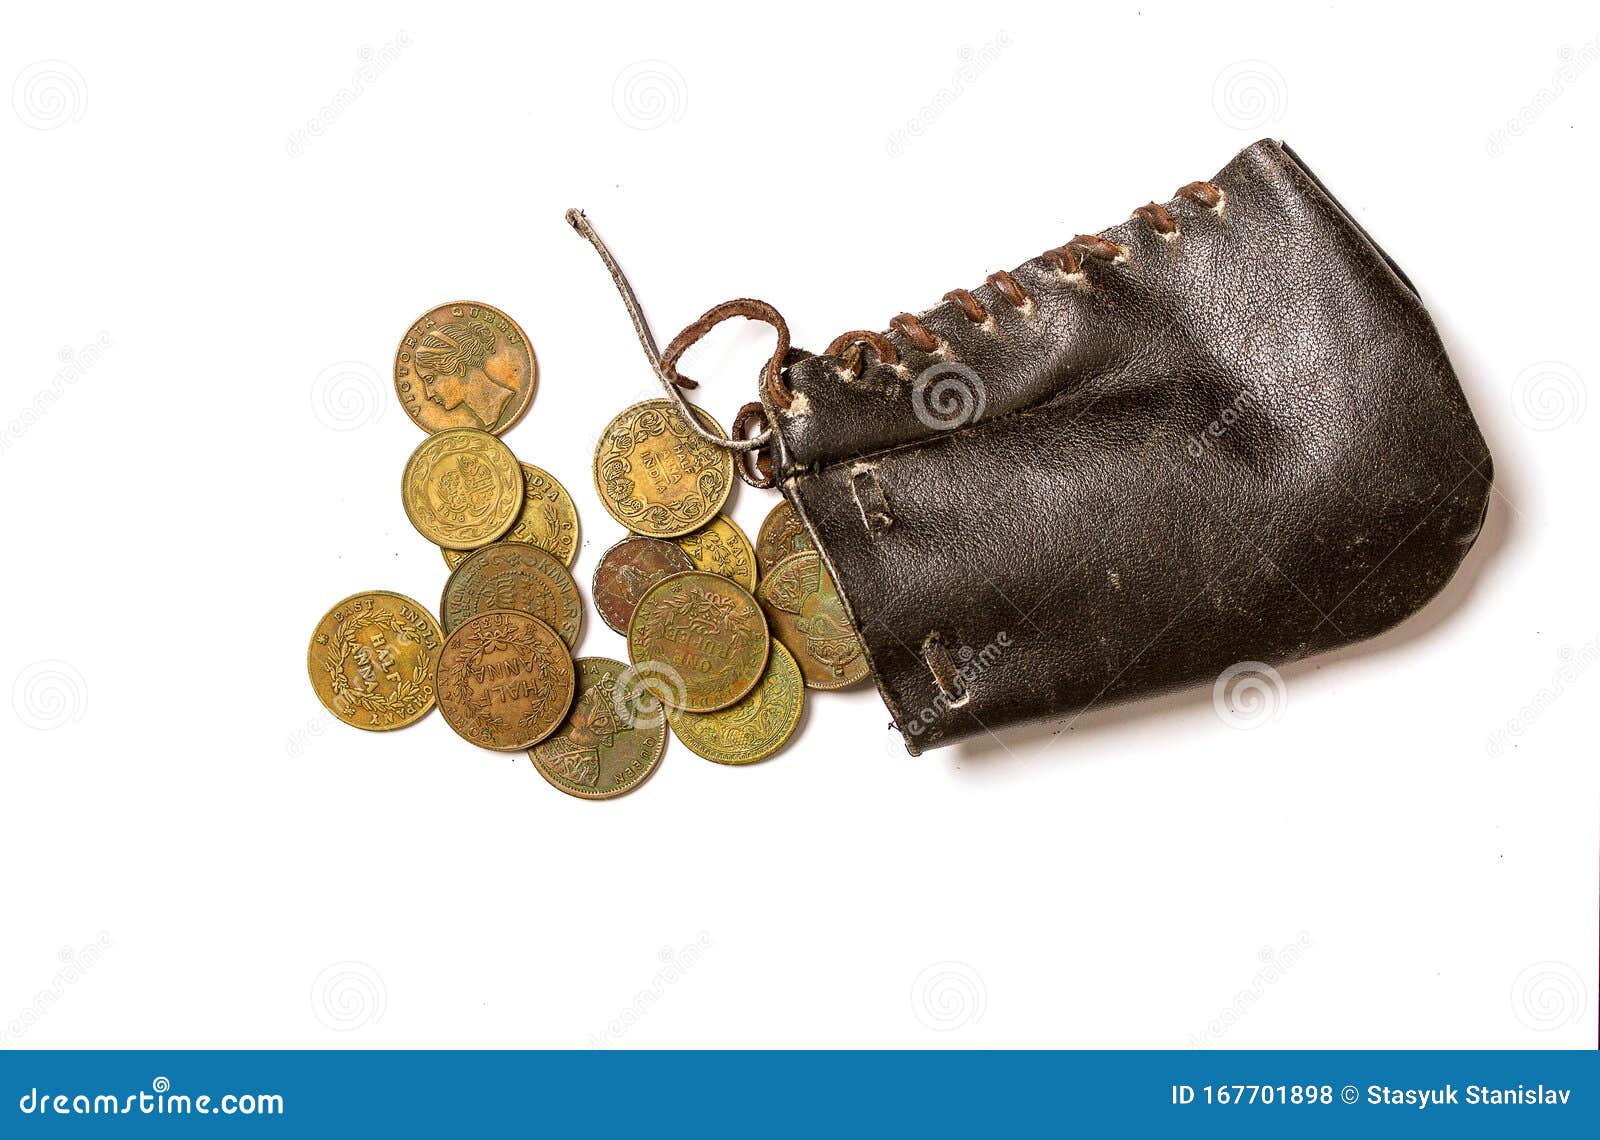 GLENROYAL Small purse men's coin purse